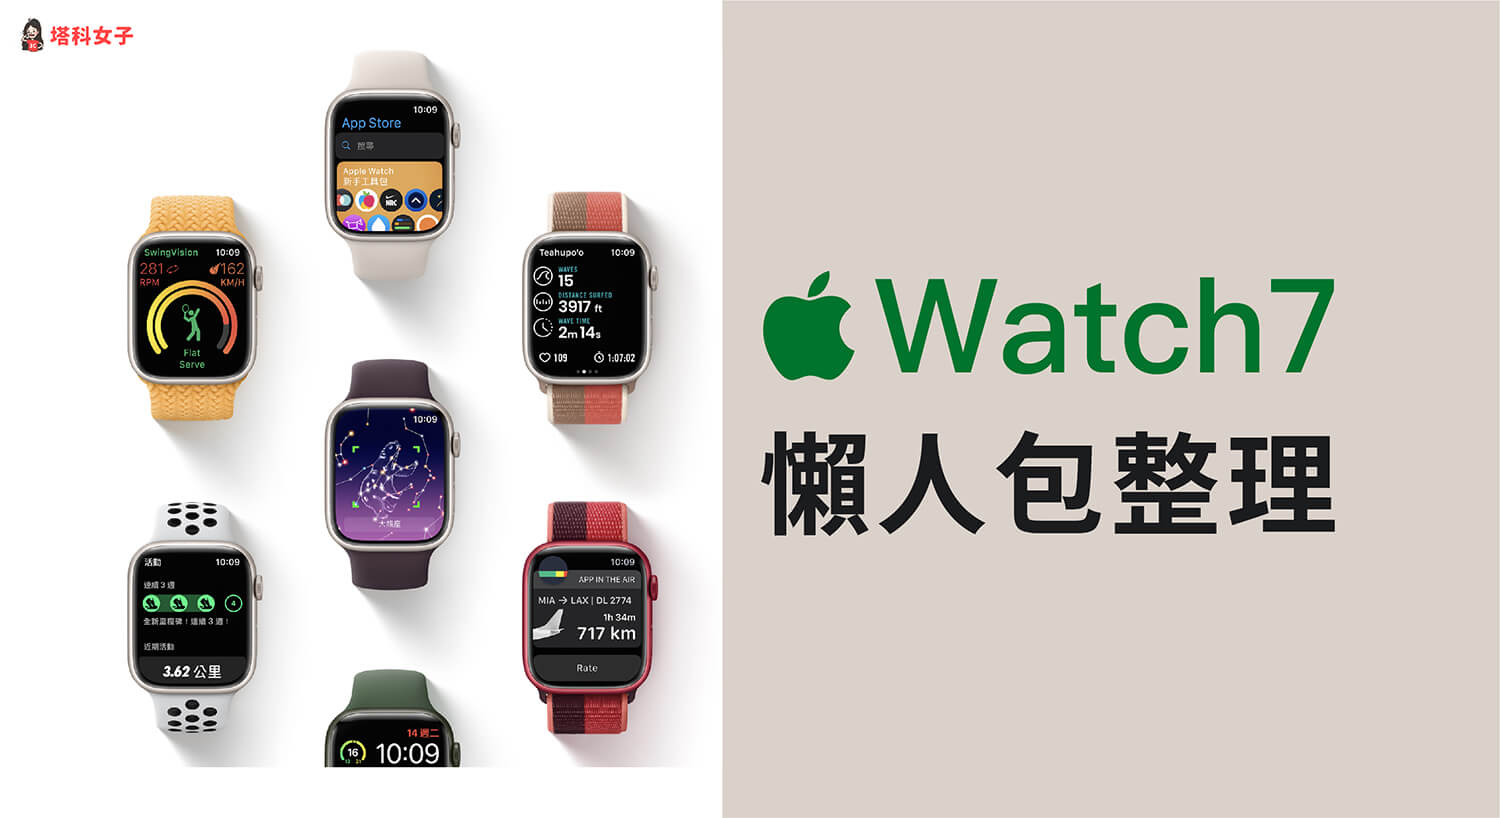 Apple Watch 7 上市時間、預購日、價格、顏色 懶人包整理